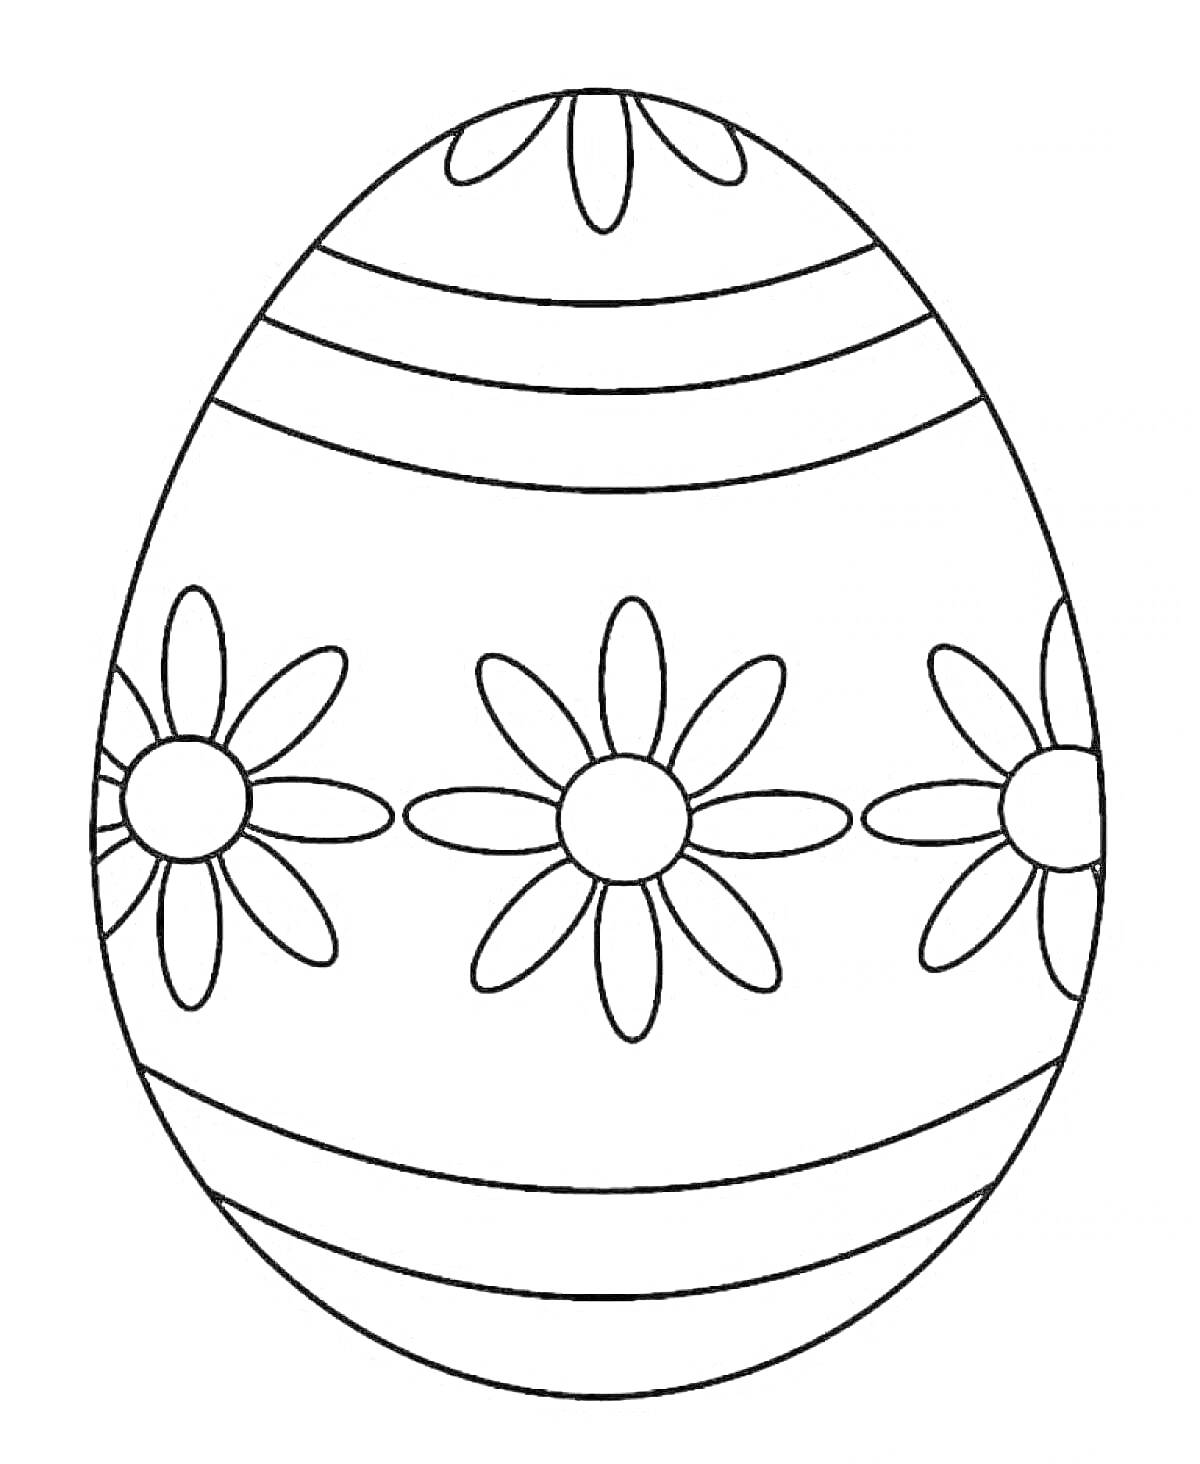 Раскраска Пасхальное яичко с полосками и цветами